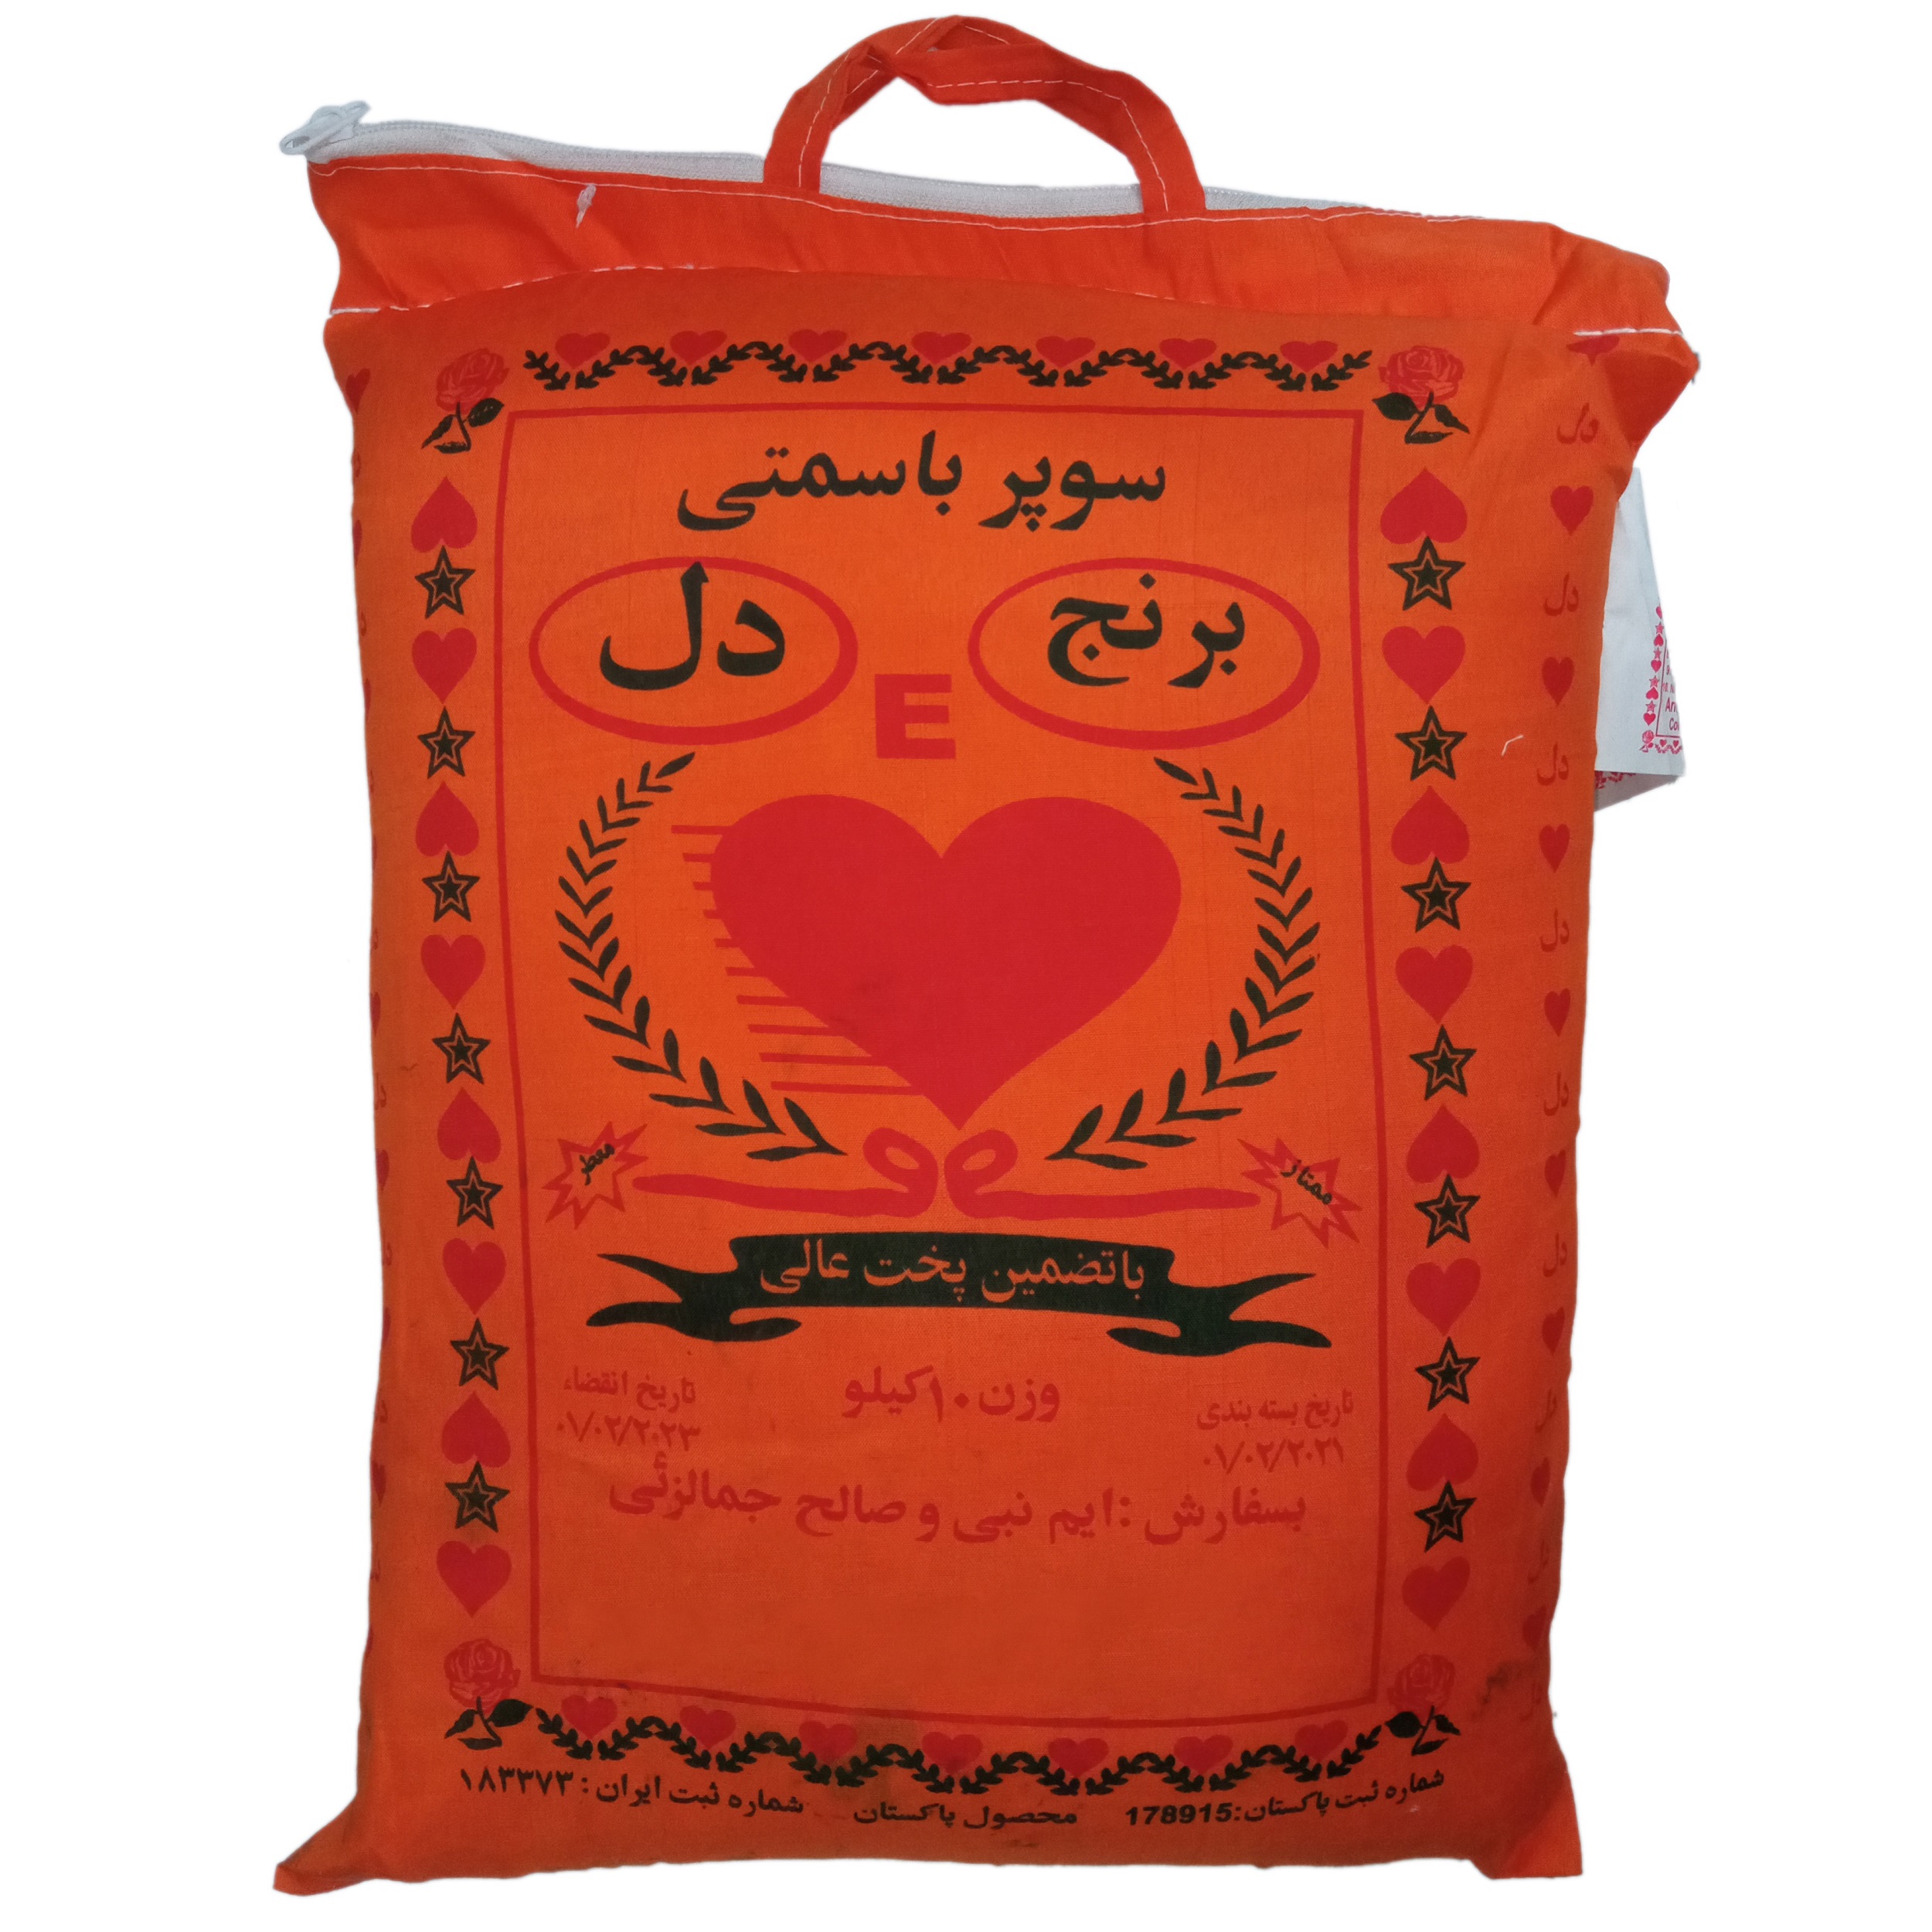 نکته خرید - قیمت روز برنج پاکستانی سوپرباسماتی دل - 10 کیلوگرم خرید